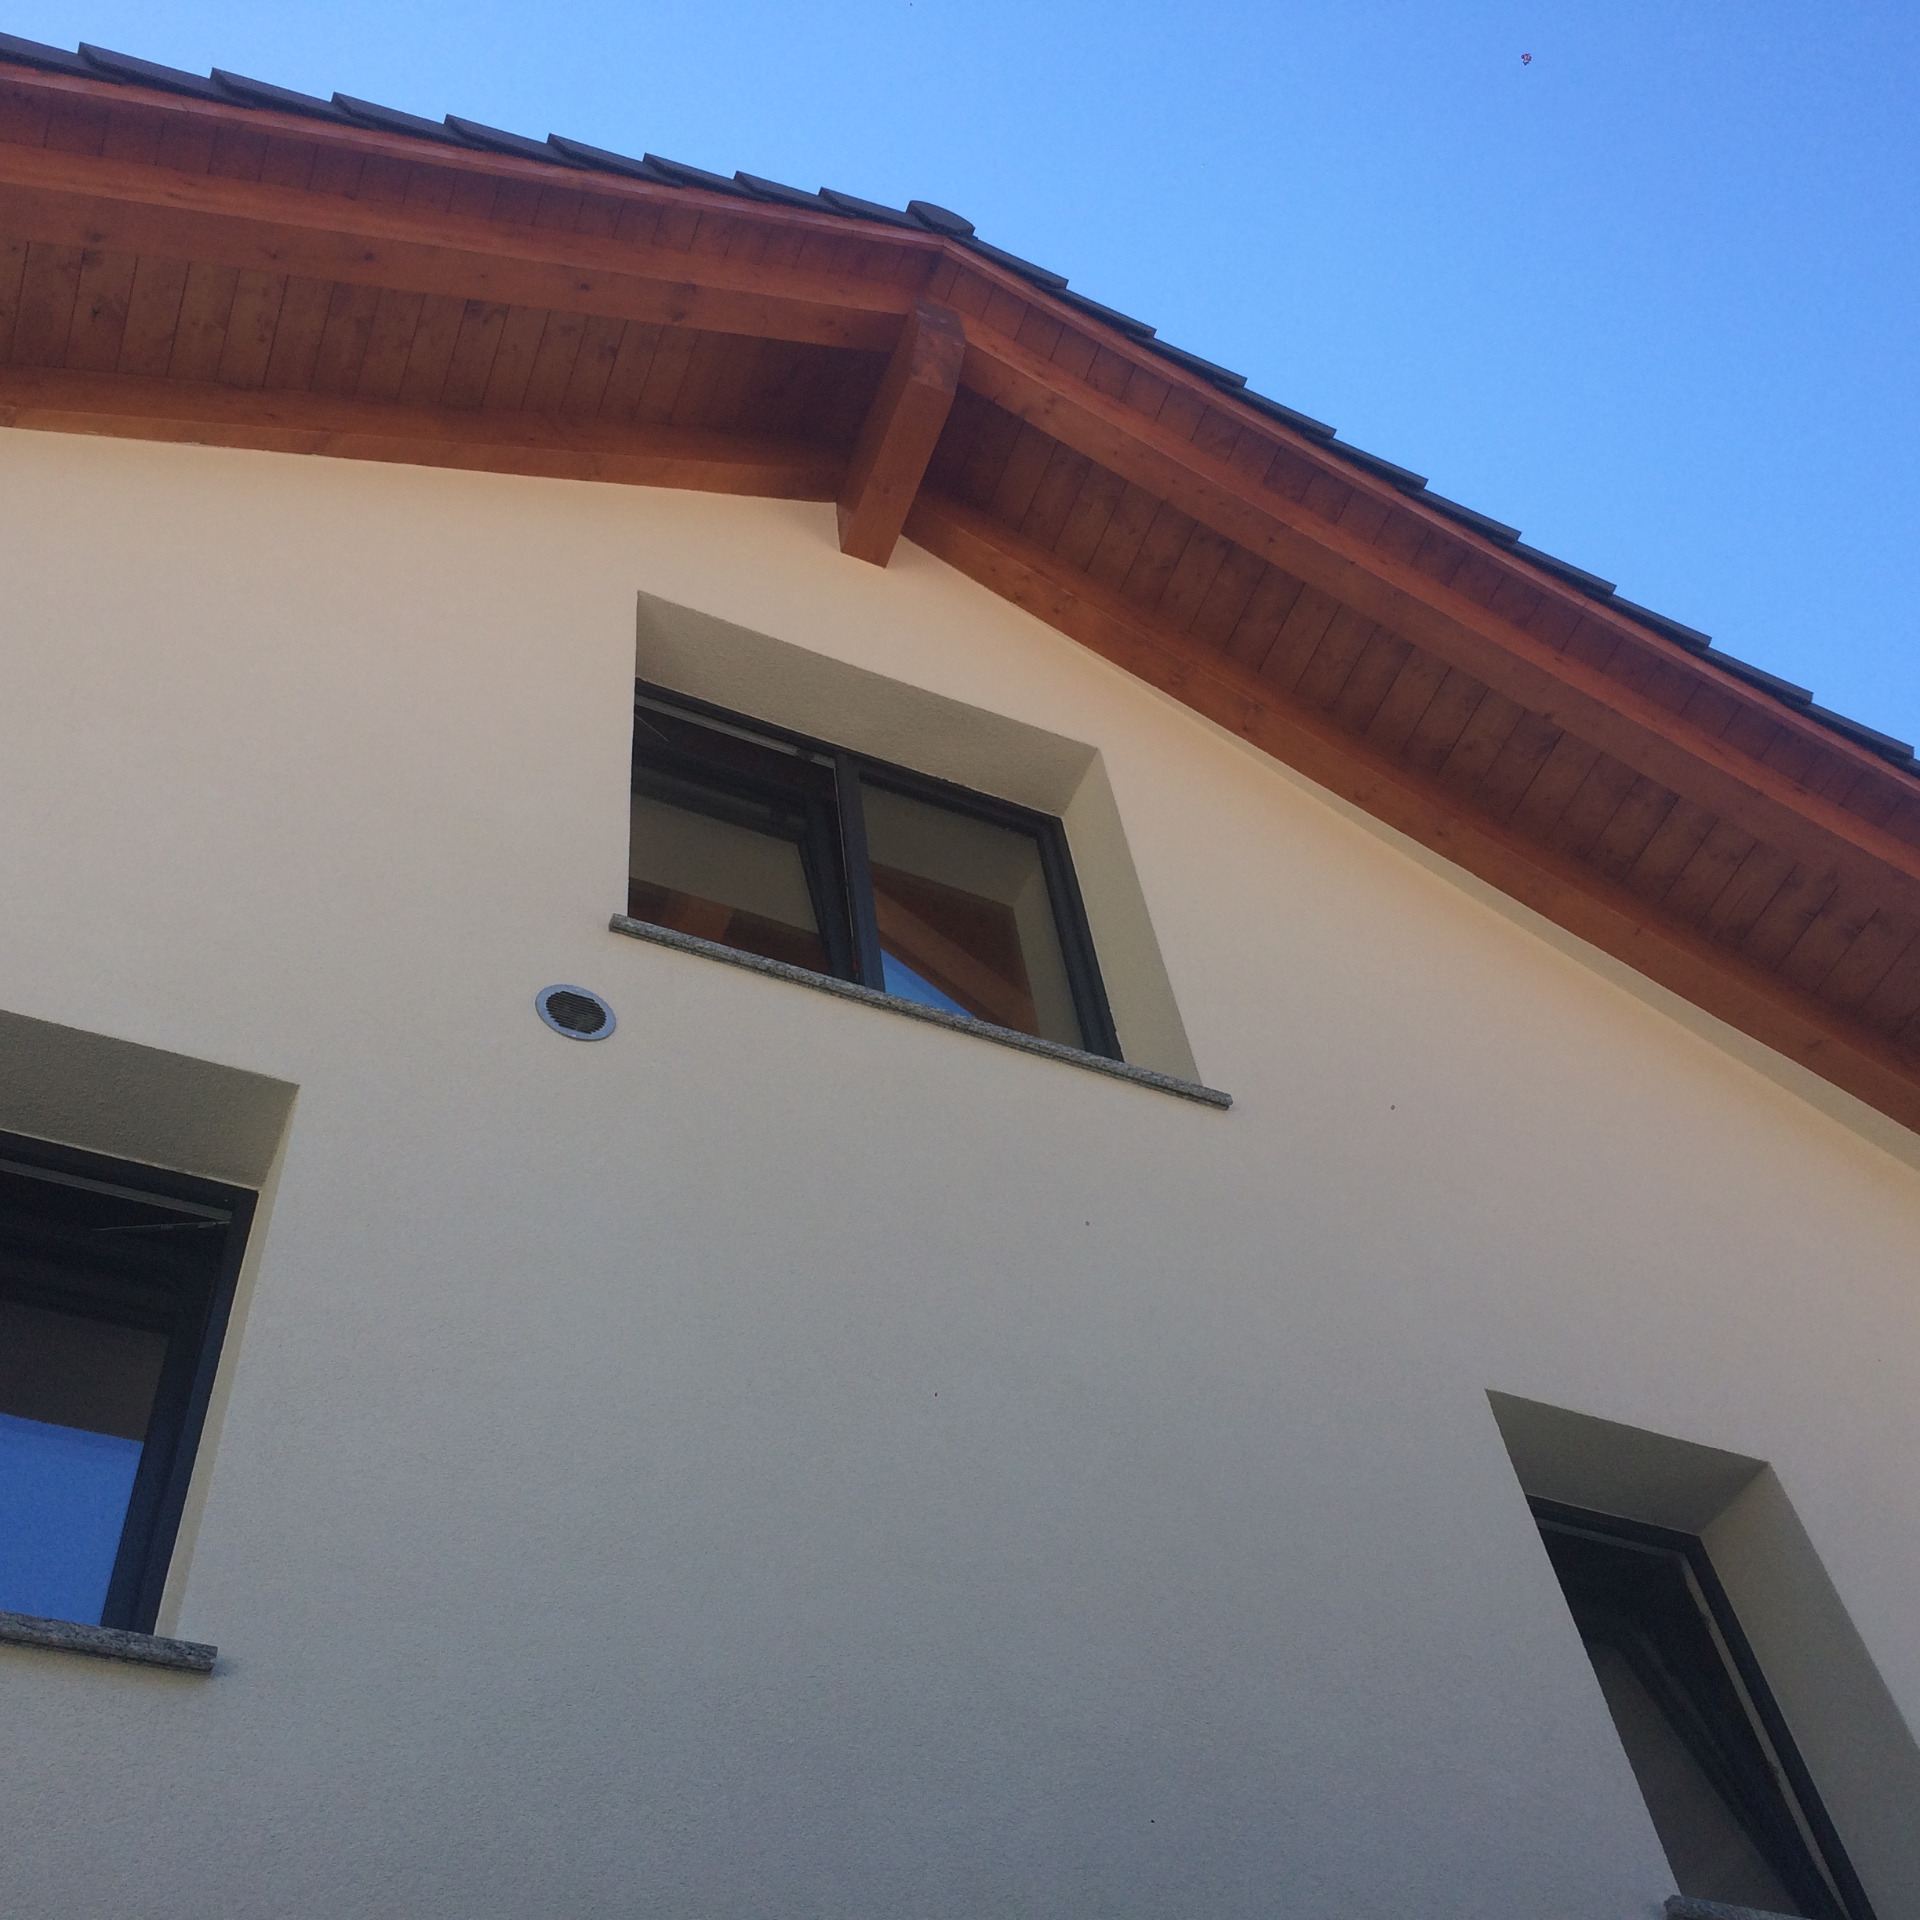 Casa con tetto classico e finestre - CCST Sud SA